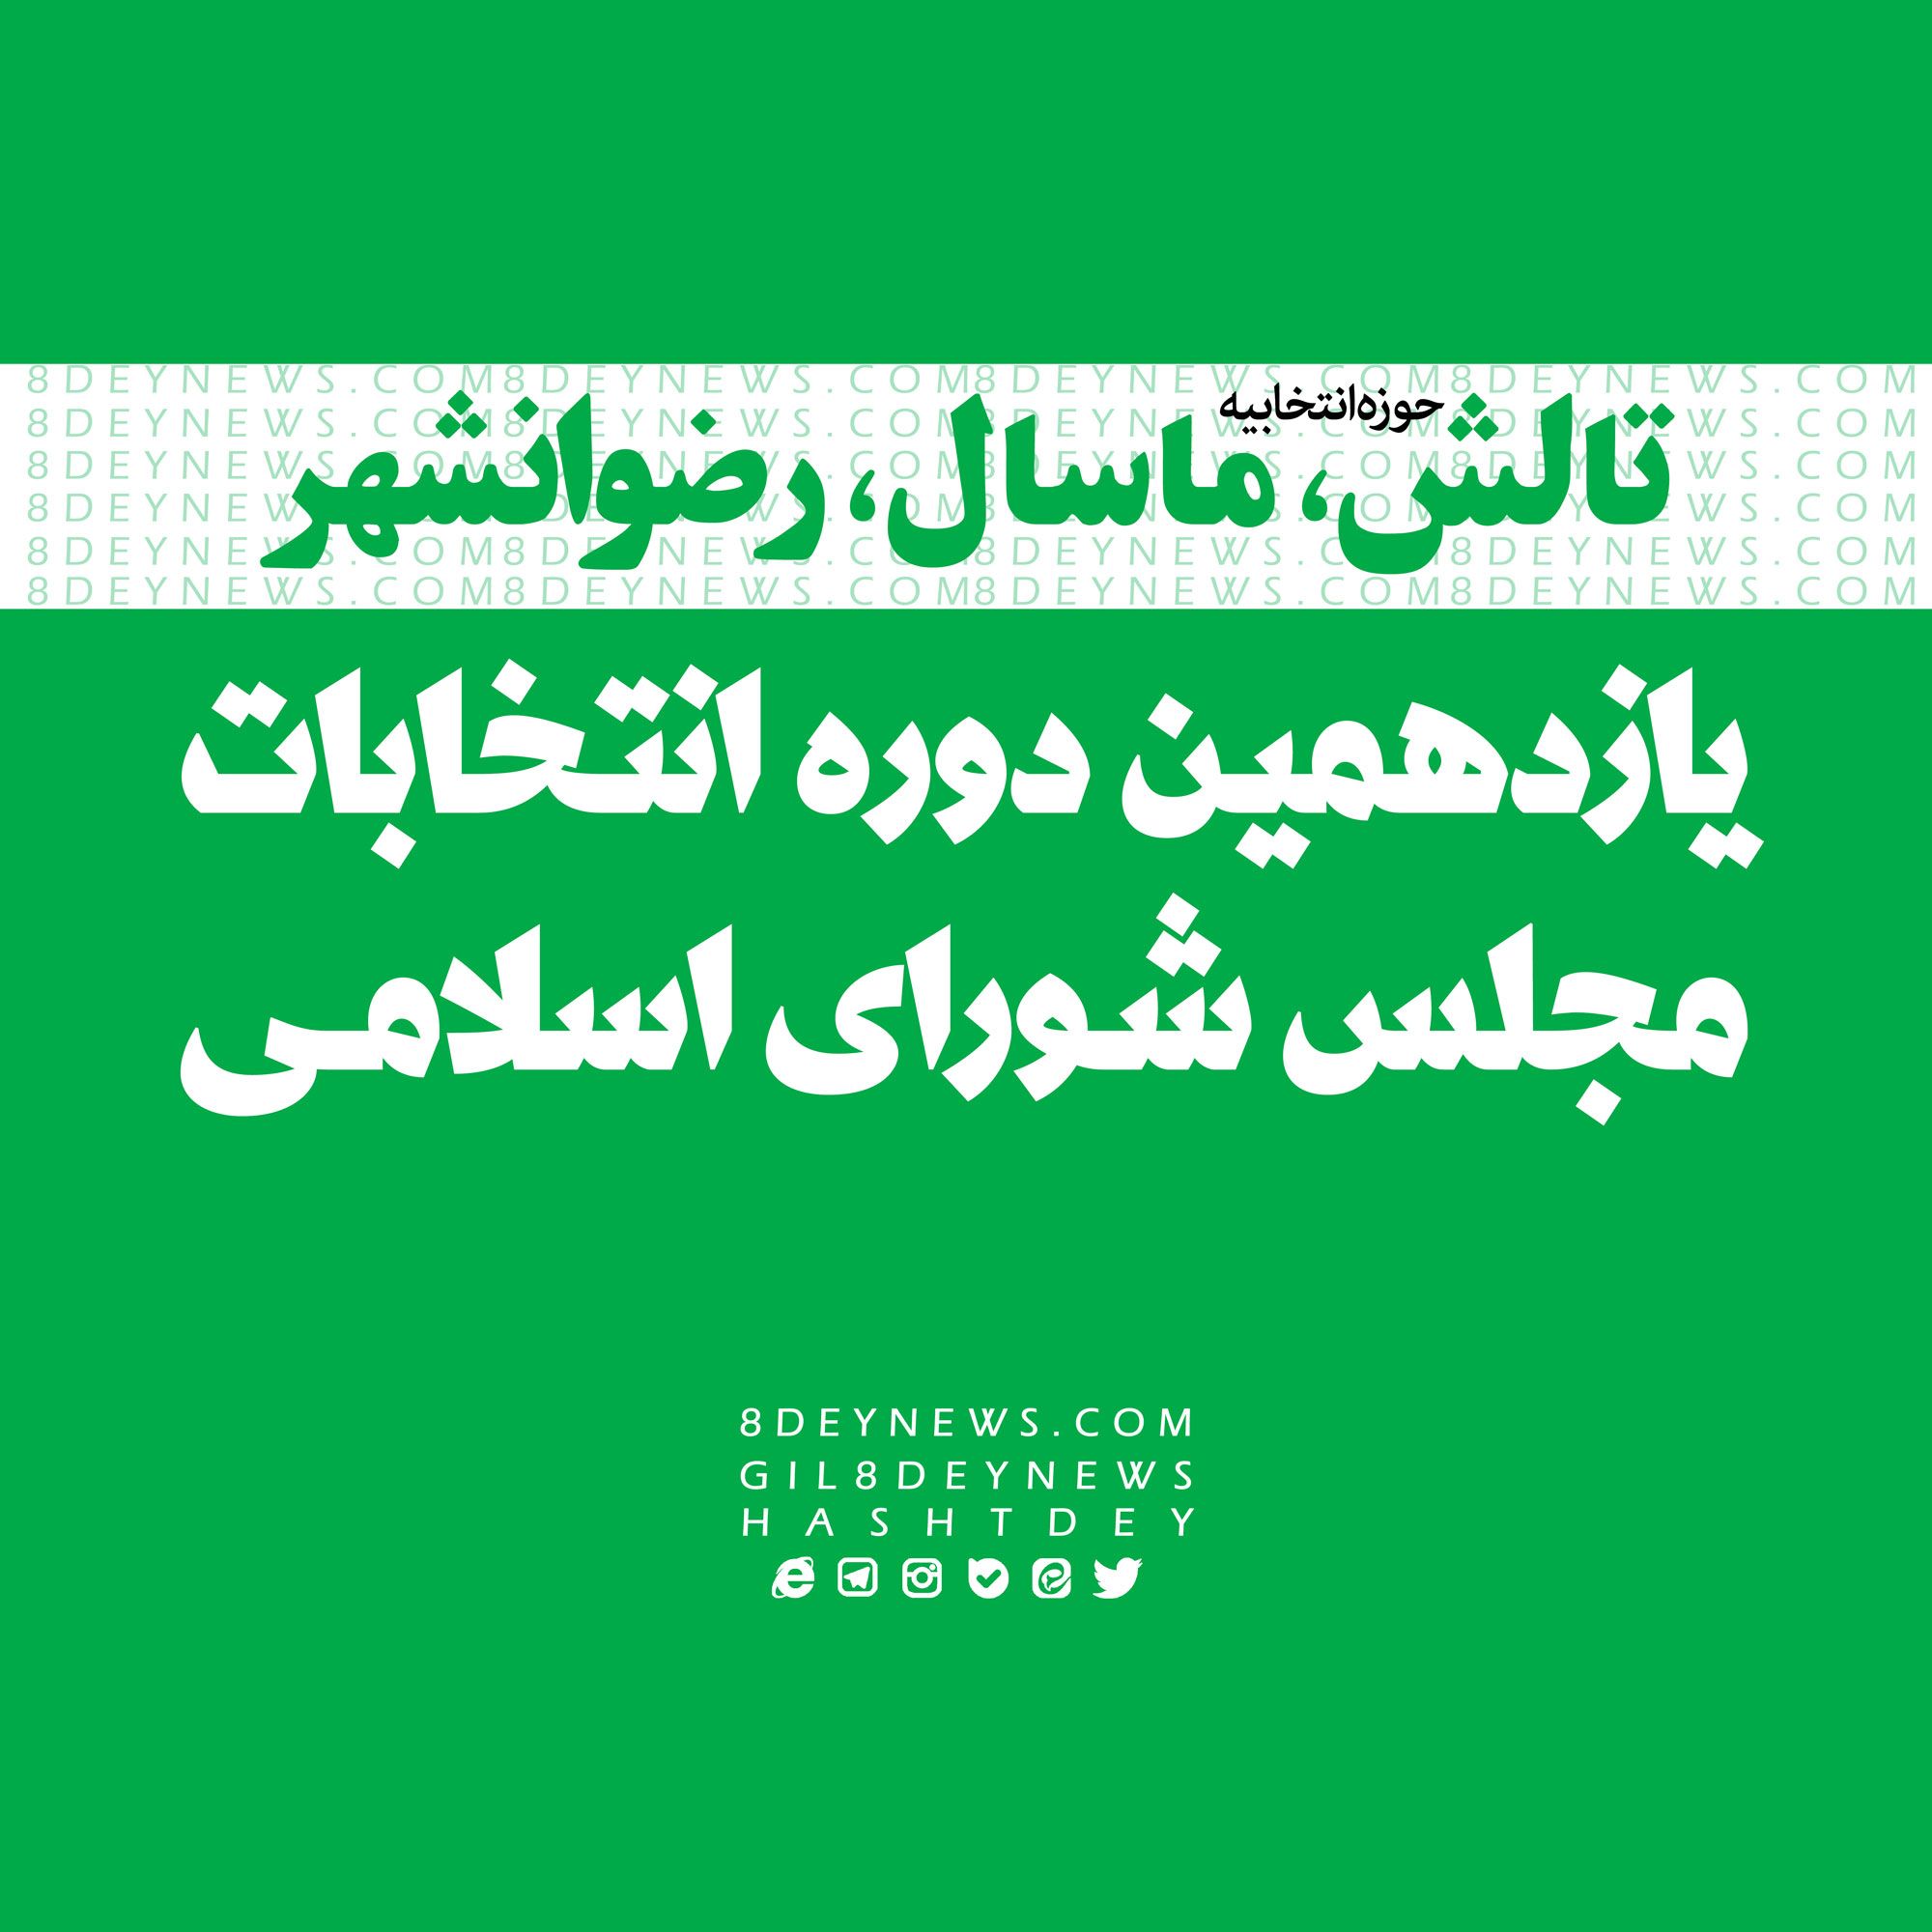 اعلام نامزدهای نهایی حوزه انتخابیه تالش، ماسال و رضوانشهر + اسامی